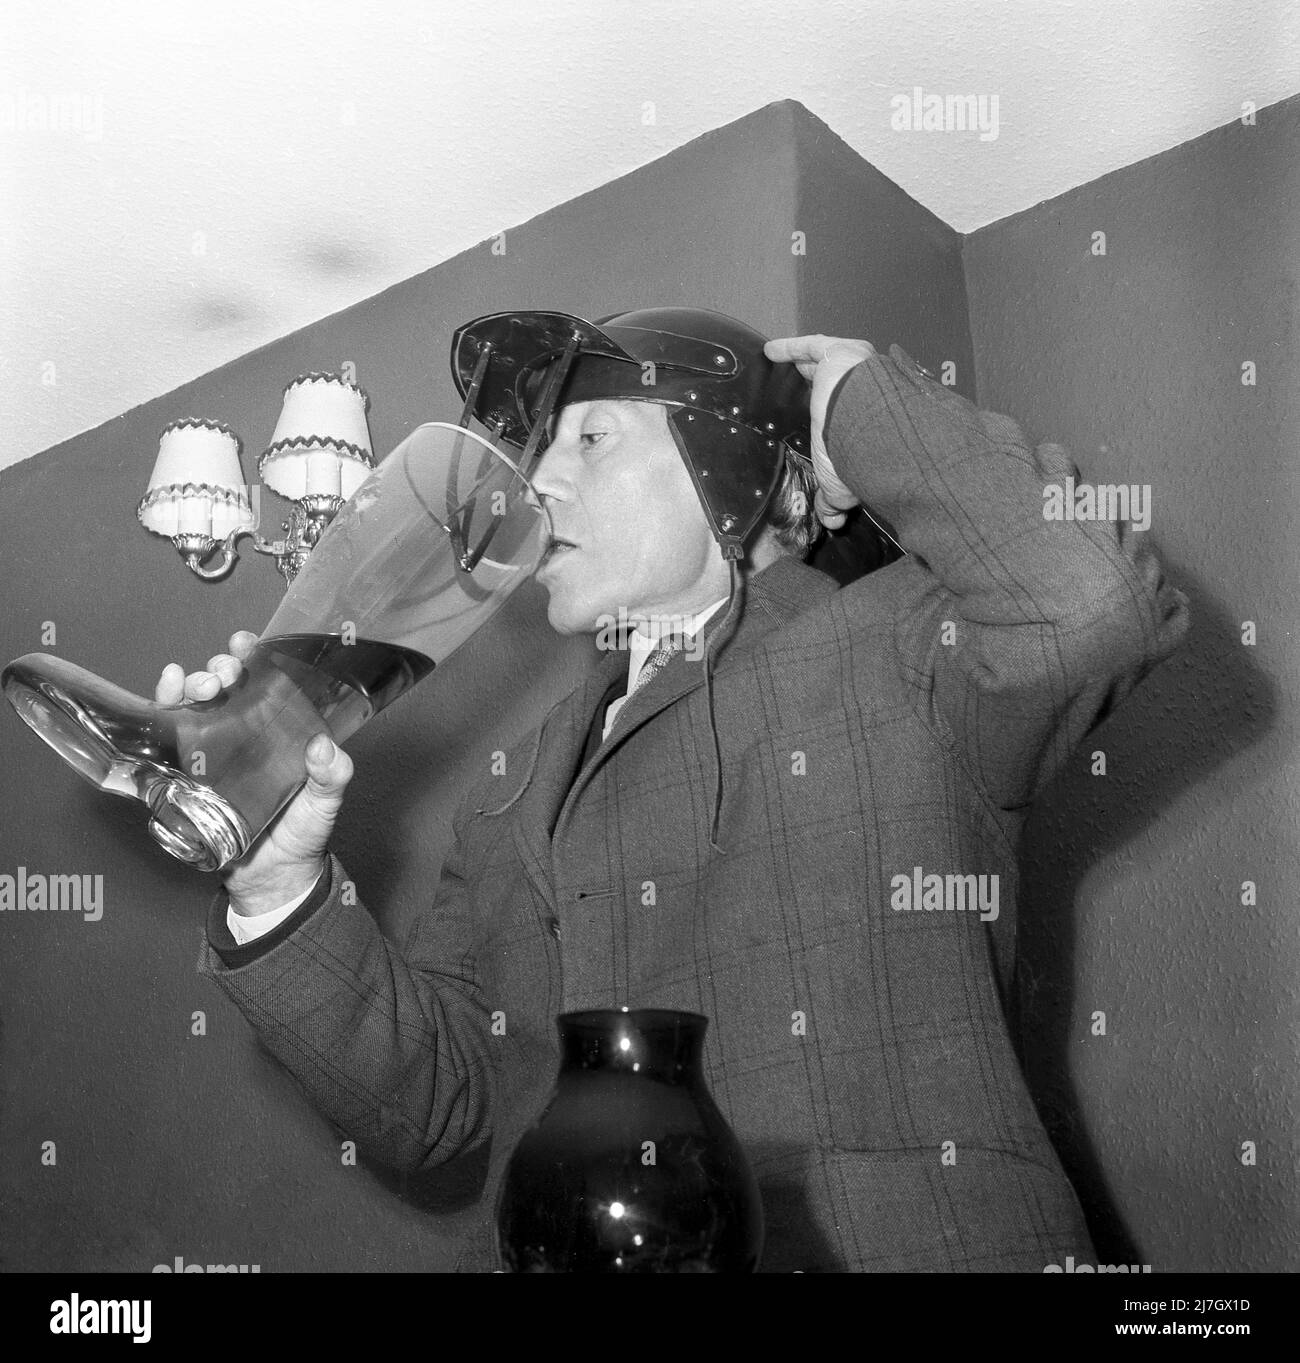 1960s, historique, un homme debout dans une pièce, portant une veste à carreaux et une casquette ou un chapeau inhabituel avec rabats d'oreille. Le chapeau est également doté d'une visière avant avec des sangles en cuir. Il boit dans une grande botte de bière en verre, peut-être un toast traditionnel ou un rituel lors d'un dîner sportif annuel. En Allemagne, boire de la bière à partir d'une botte de verre est une tradition datant du 19th siècle, où elle a commencé comme un rituel militaire pour les jeunes solidaires. Banque D'Images